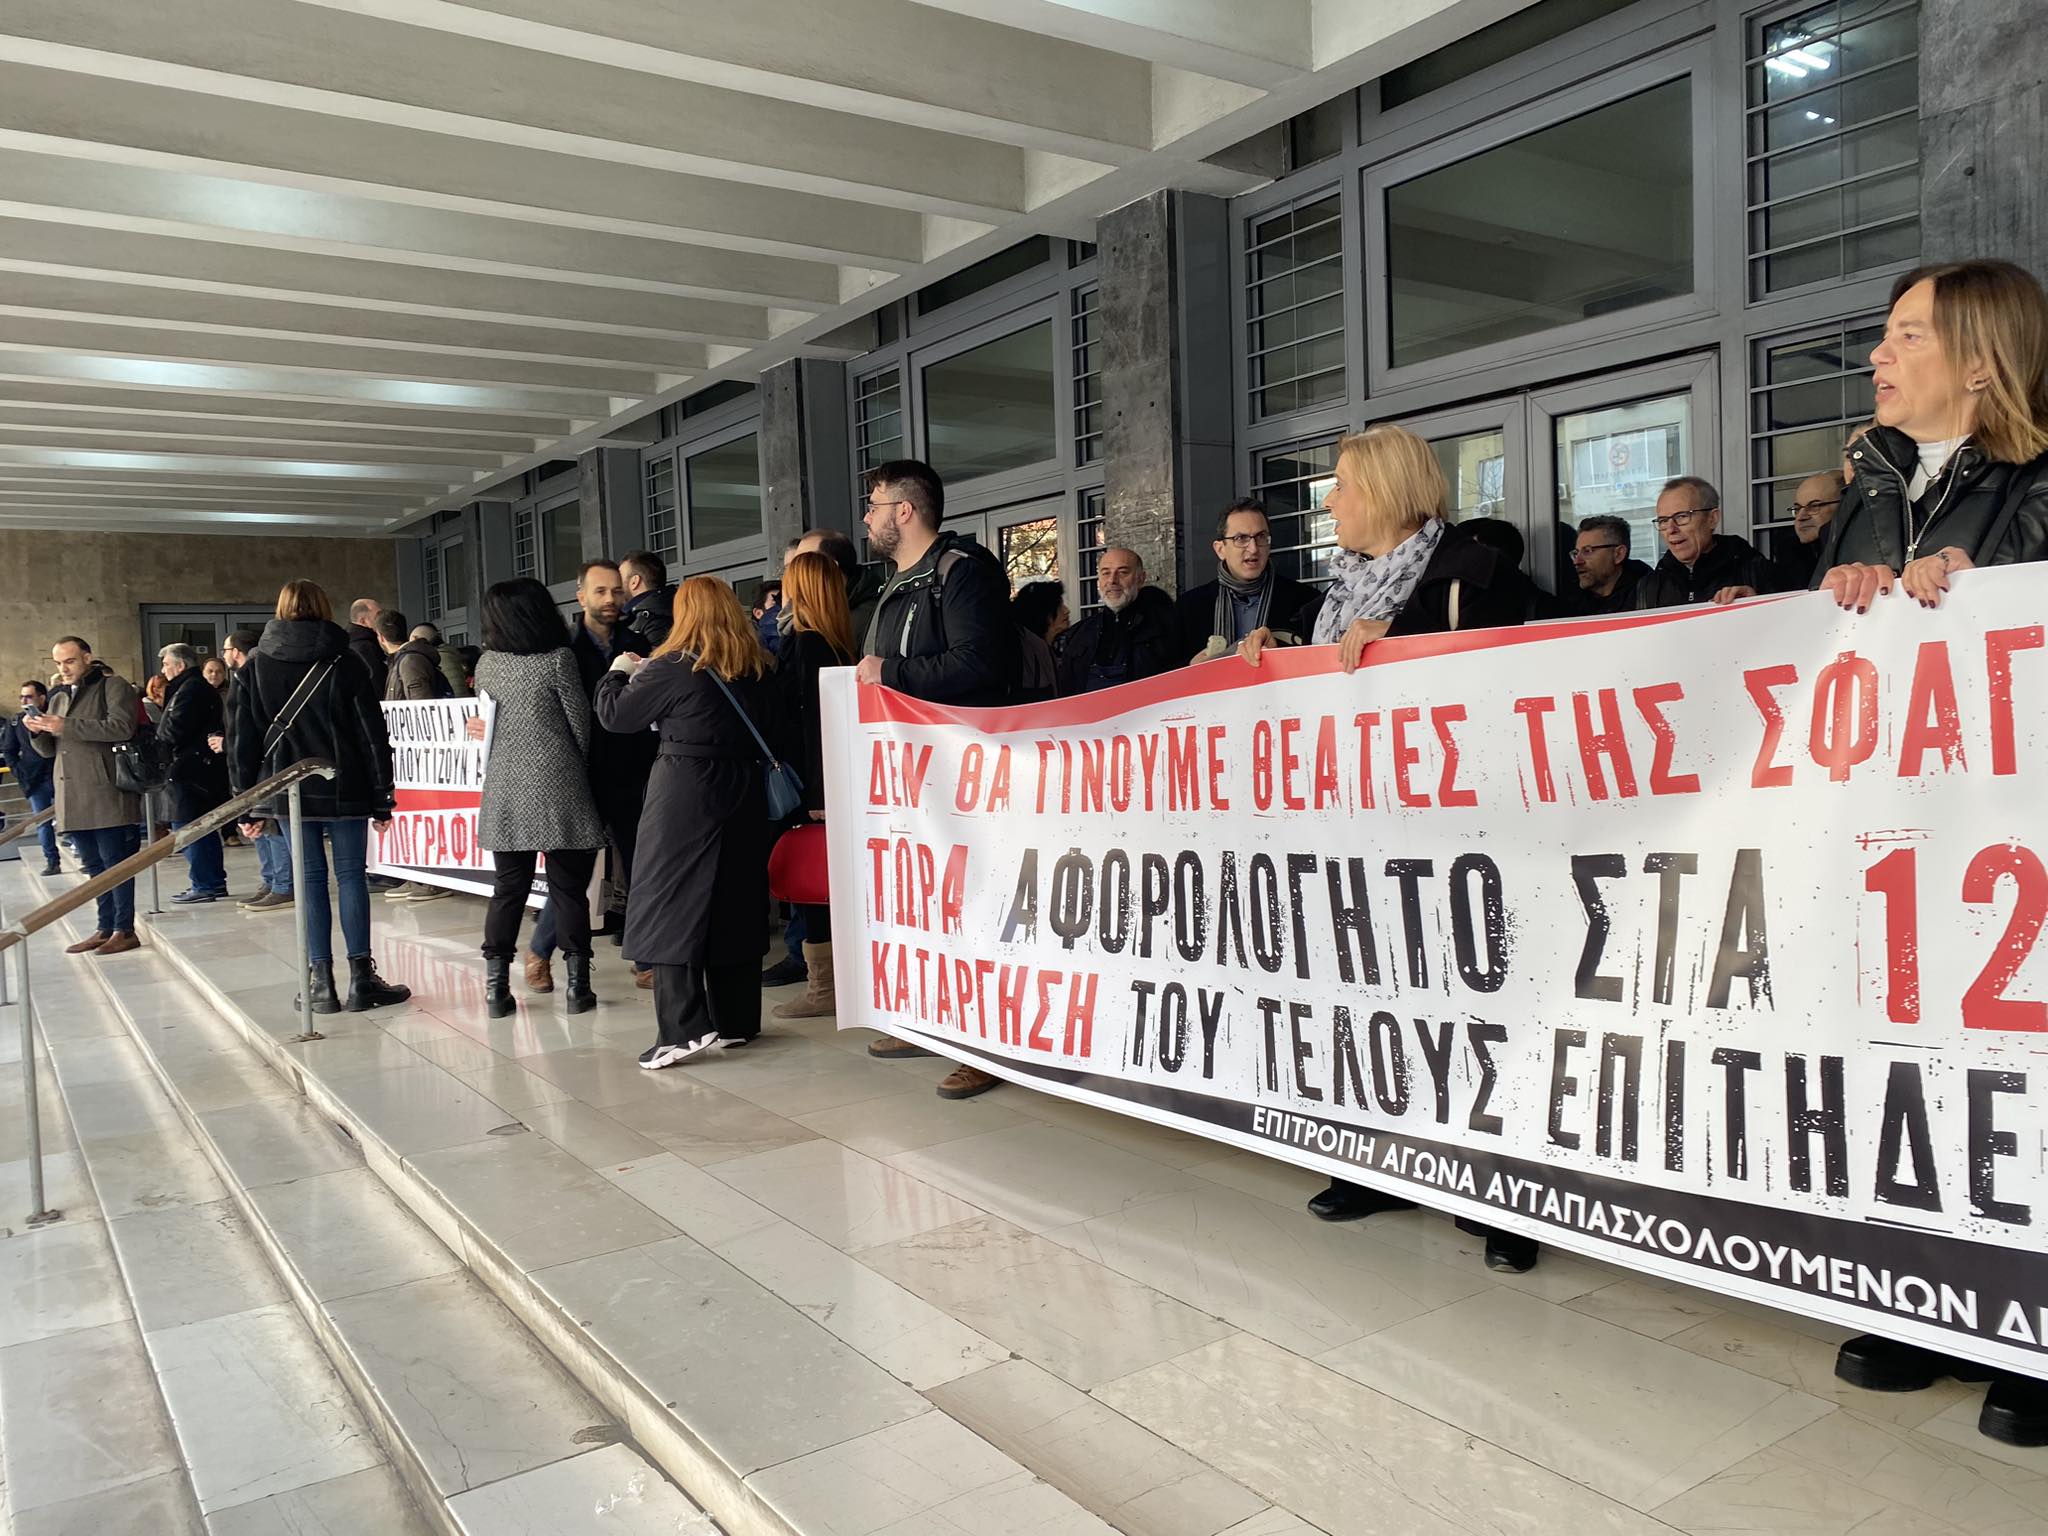 Θεσσαλονίκη: Δικηγόροι απέκλεισαν συμβολικά το δικαστικό μέγαρο – Συνεχίζεται η αποχή τους